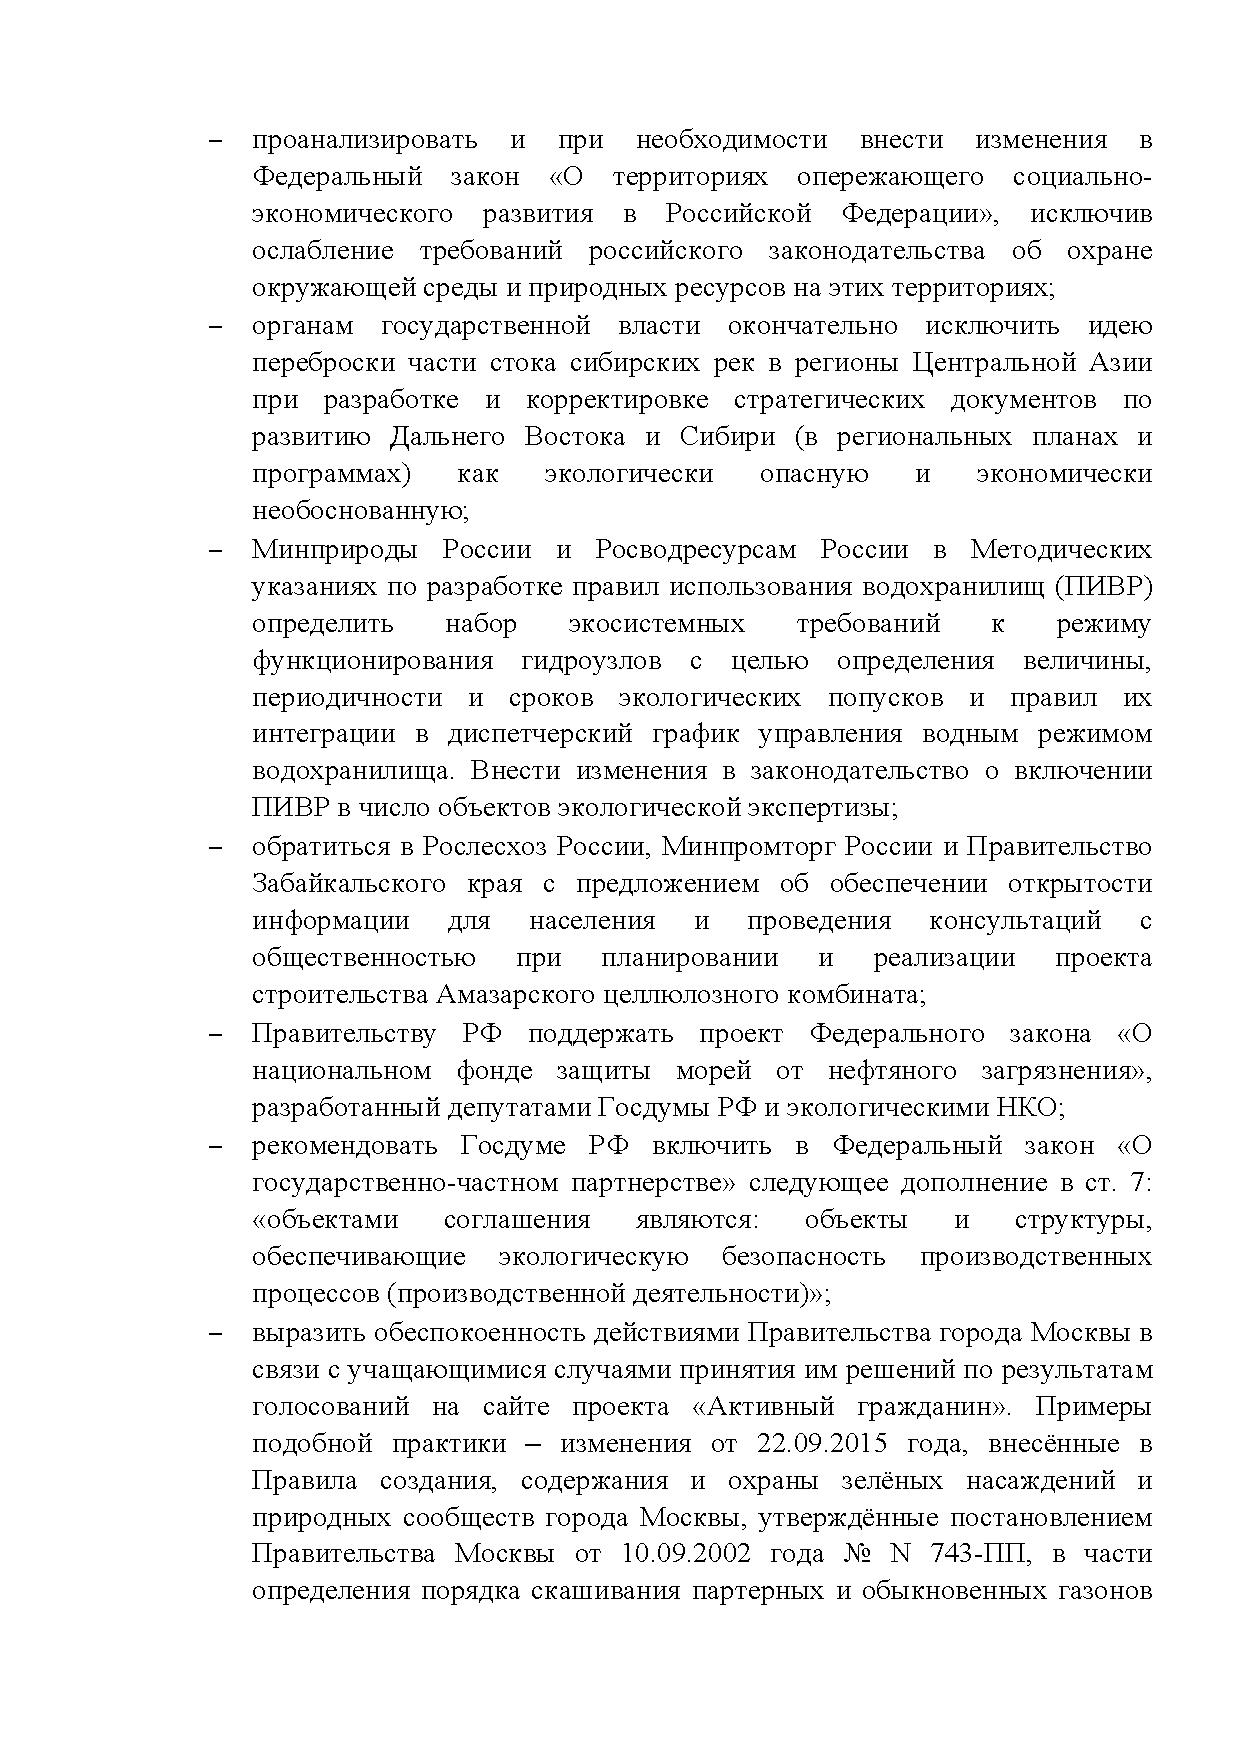  Опубликованы Предложения Общероссийского гражданского форума 2015 - фото 46